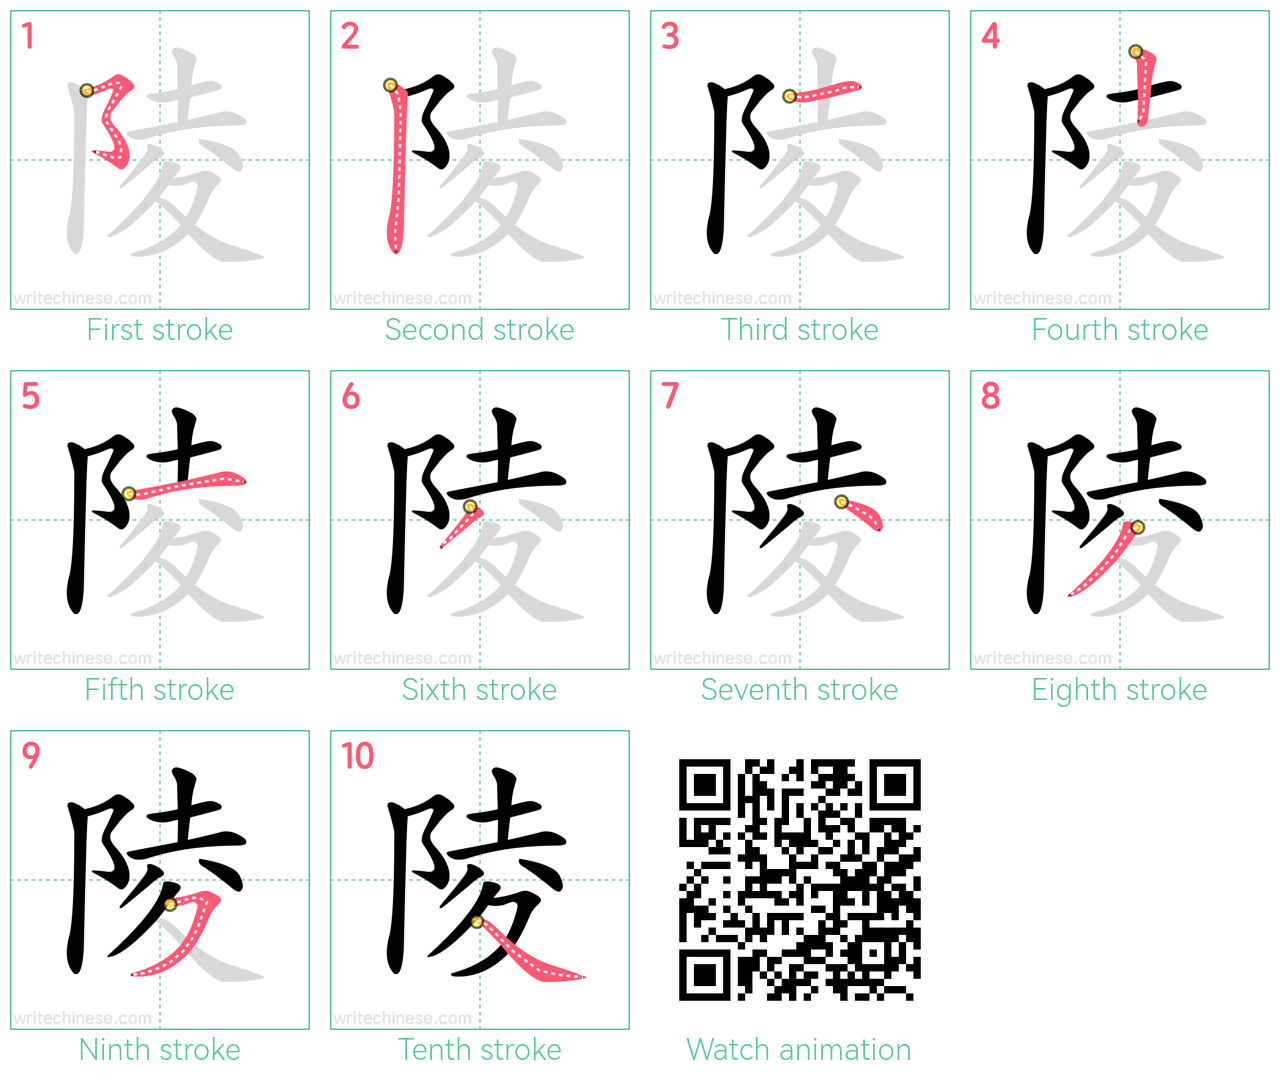 陵 step-by-step stroke order diagrams